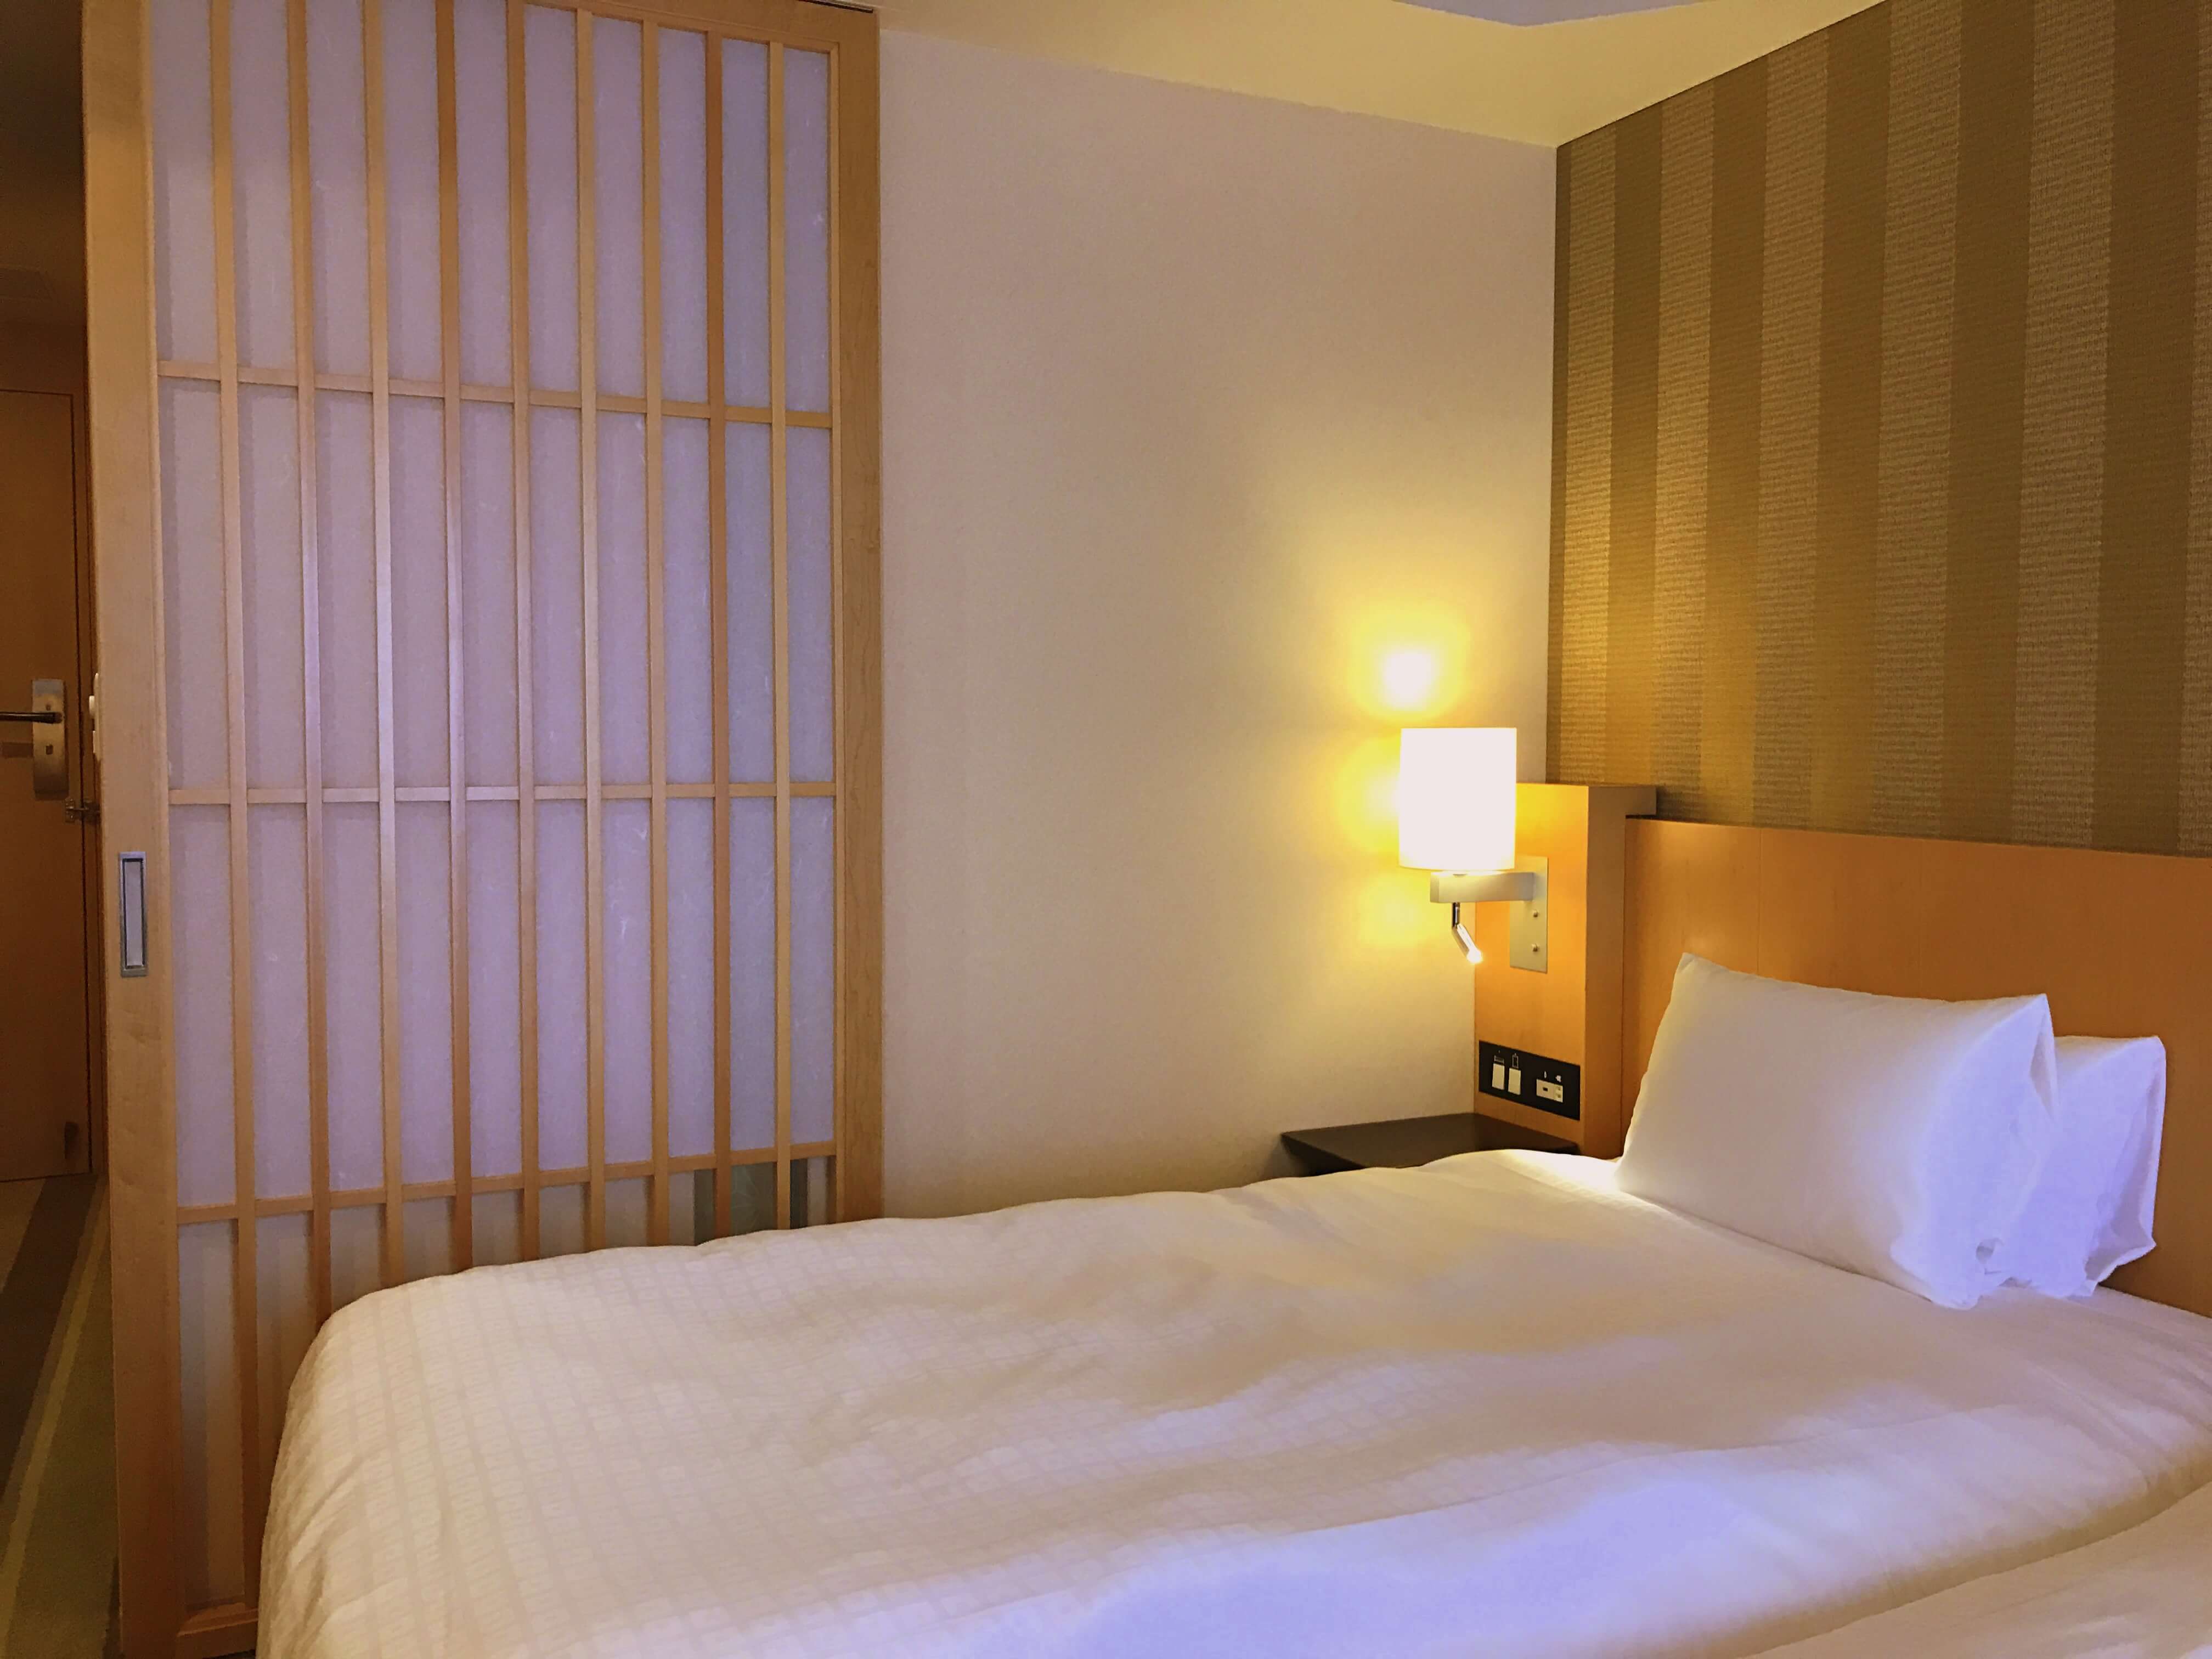 Shiba Park Hotel 151 – Sugestão de Hotel em Tokyo